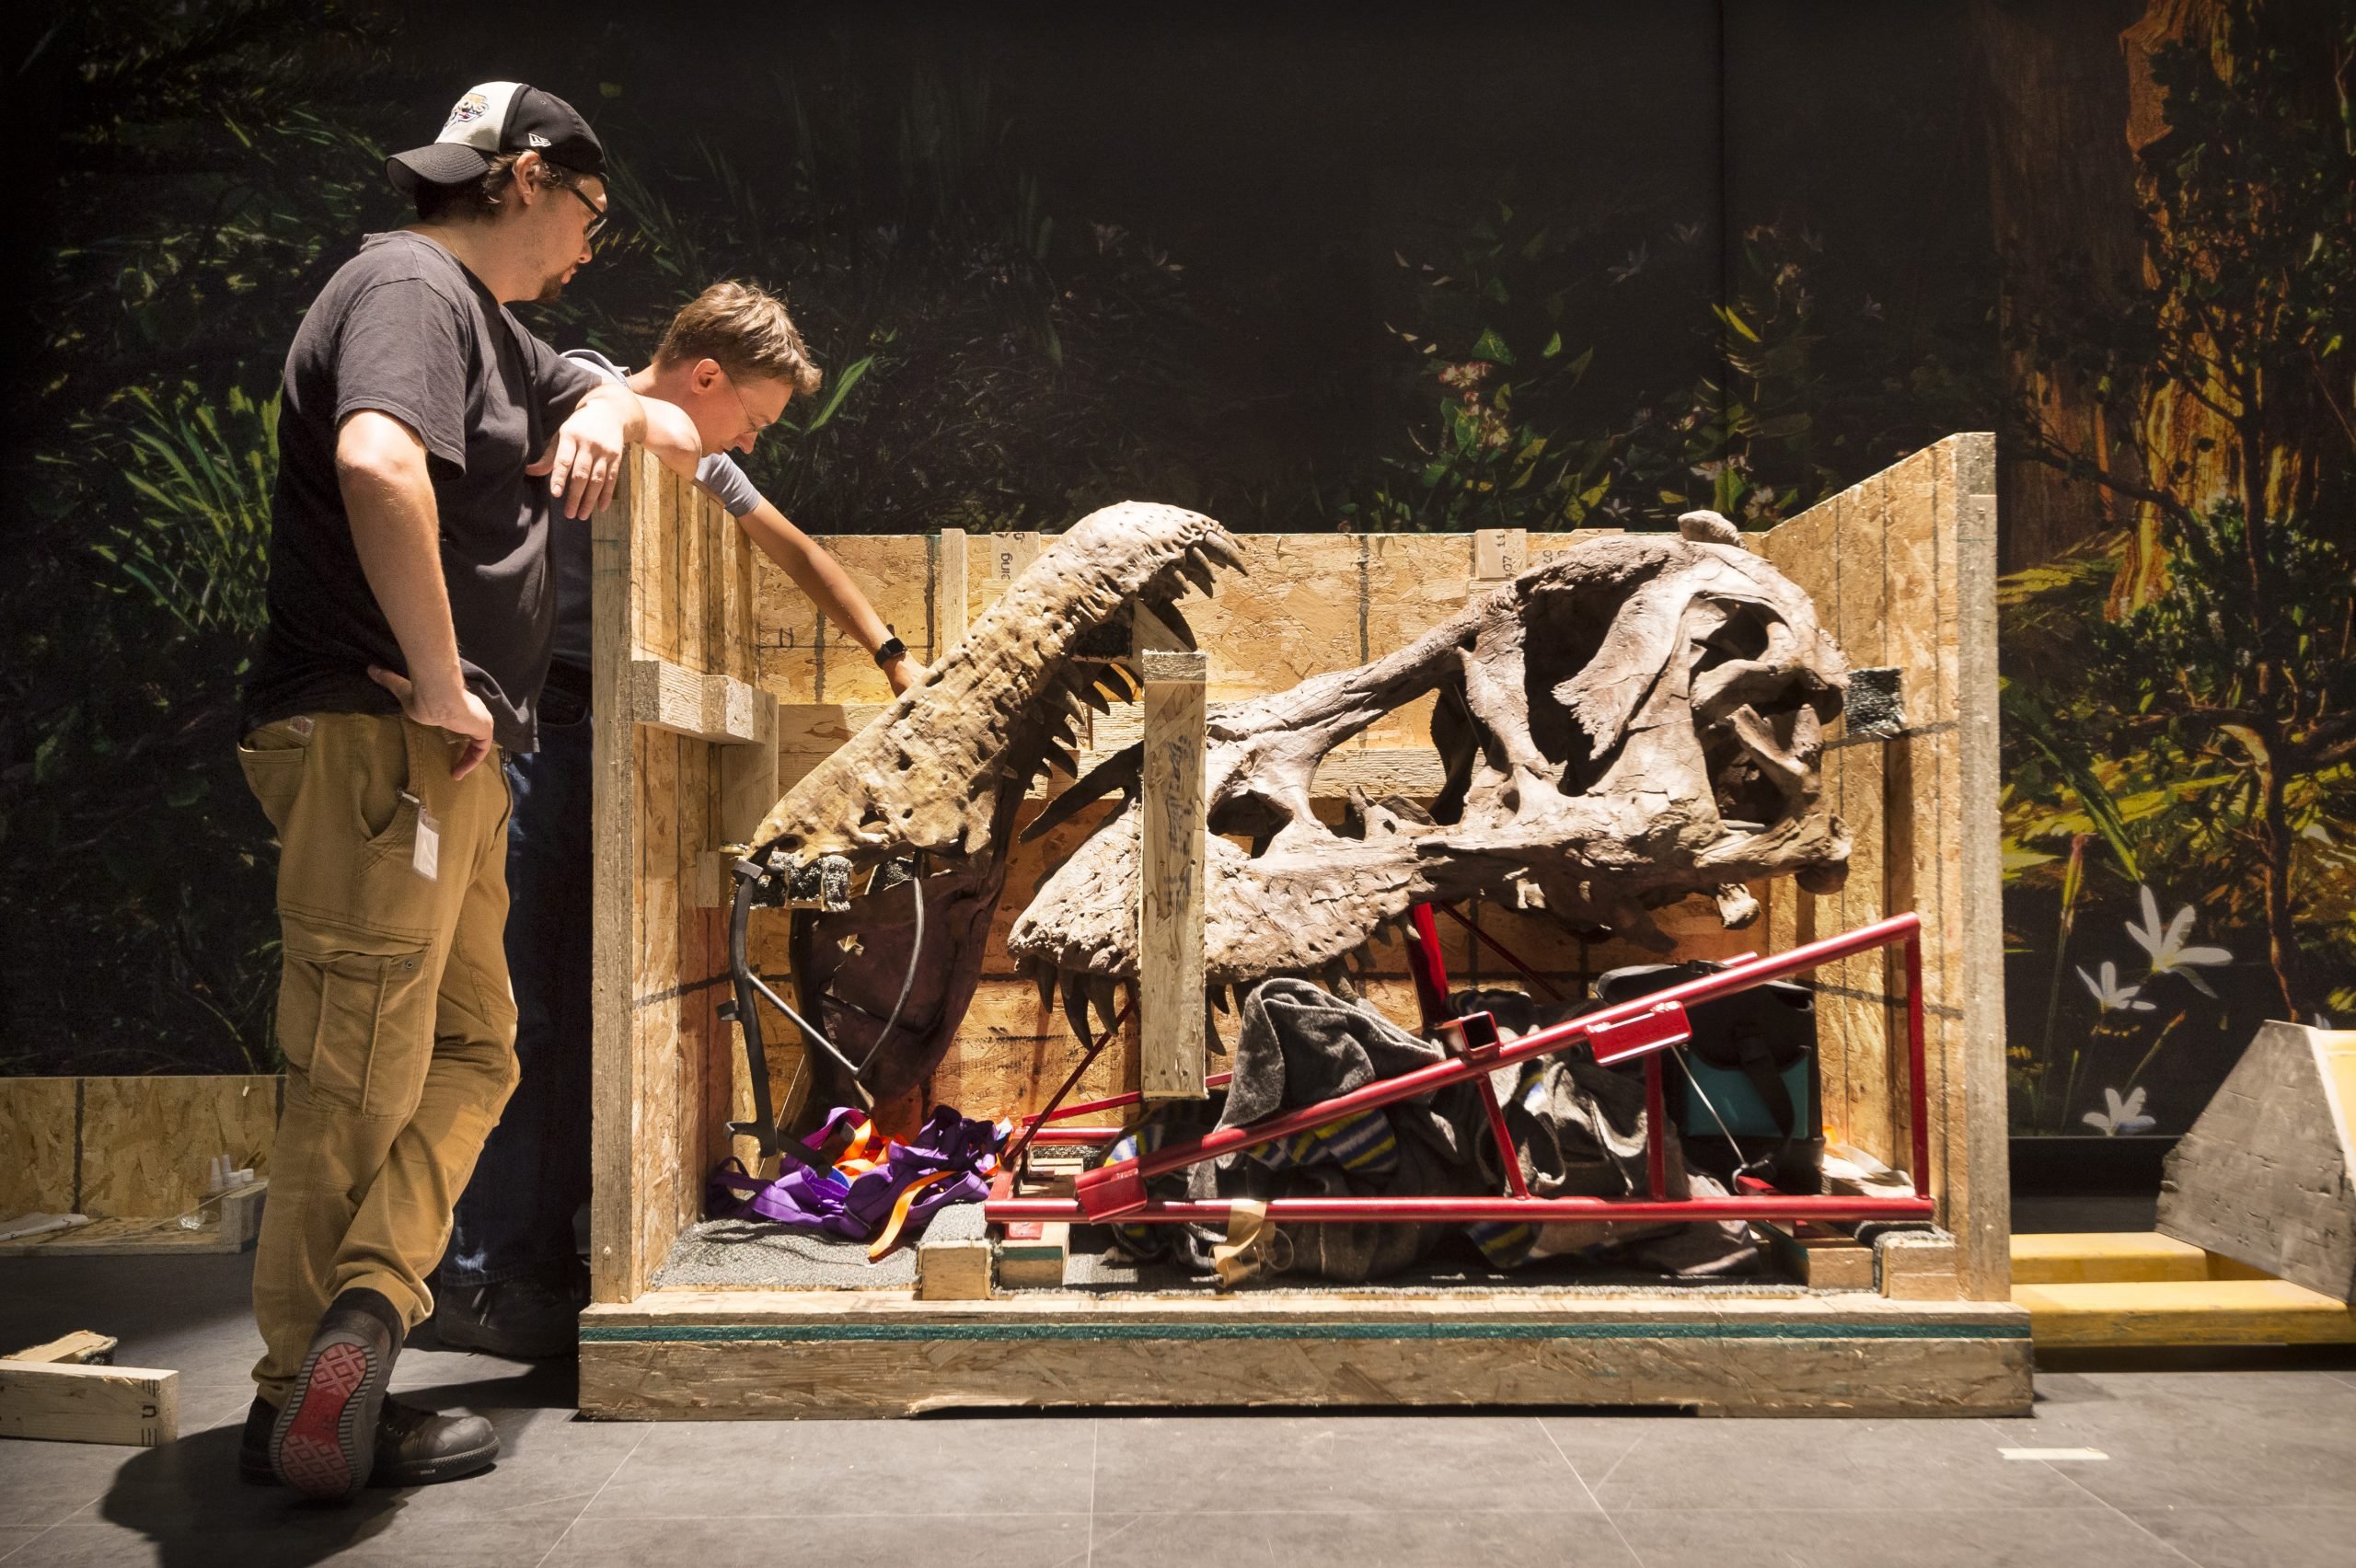 Foto: Tyrannosaurus rex 'Trix' wordt in elkaar gezet. Bron: Naturalis/Taco van der Eb